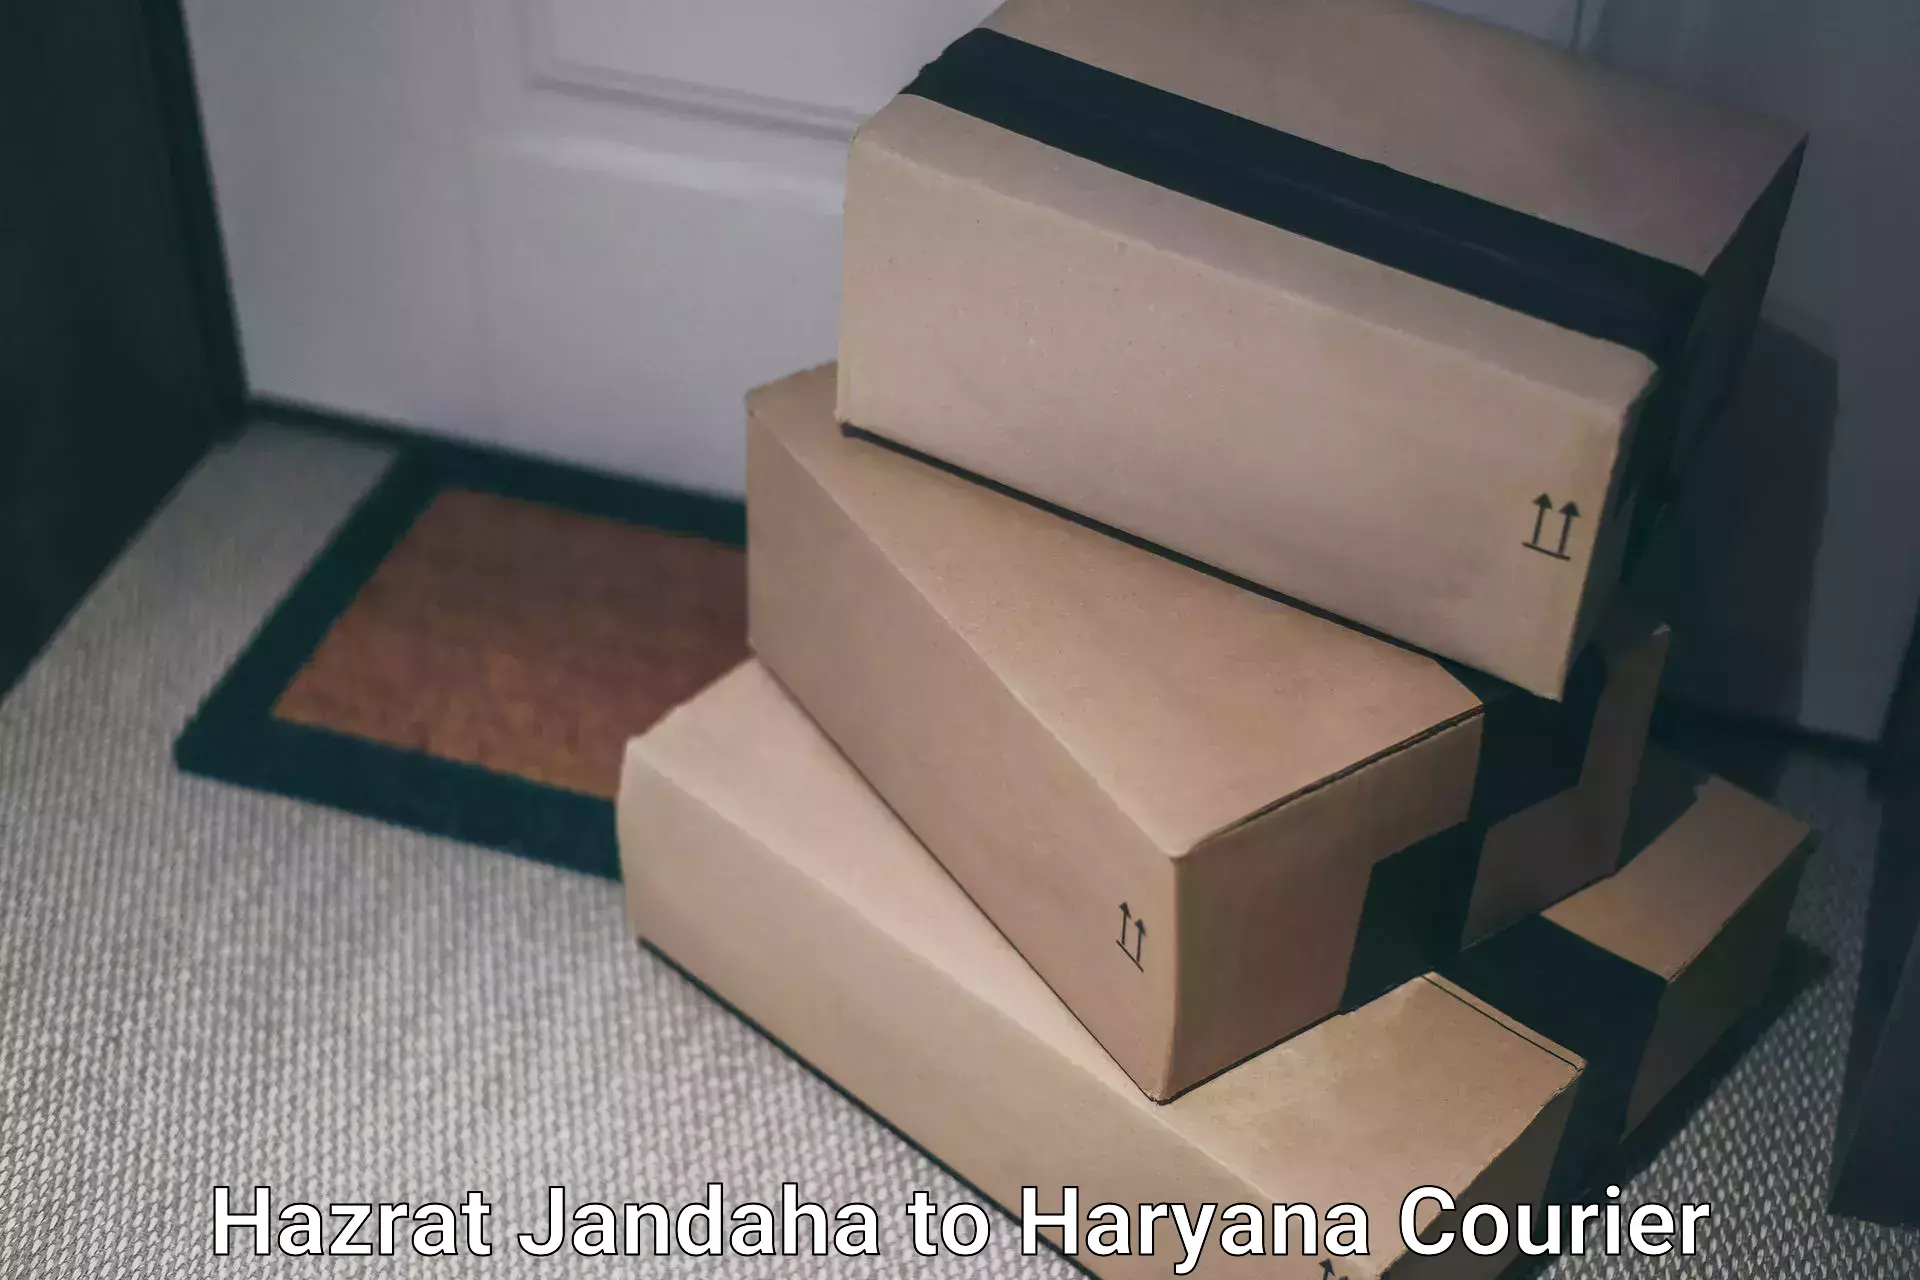 Customer-centric shipping Hazrat Jandaha to Haryana